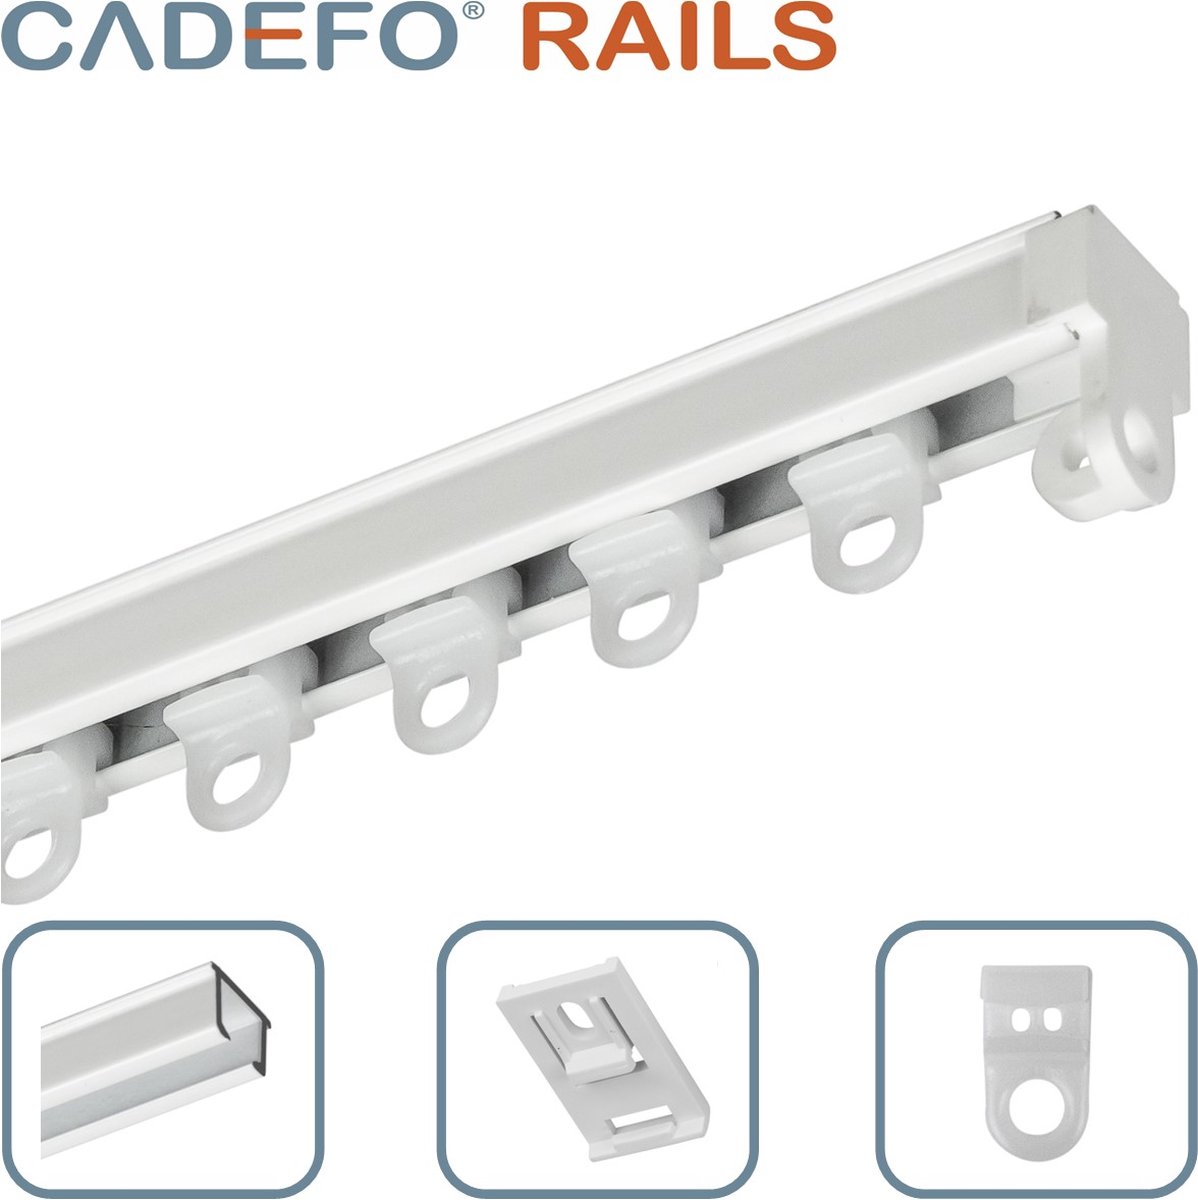 CADEFO RAILS (251 - 300 cm) Gordijnrails - Compleet op maat! - UIT 1 STUK - Leverbaar tot 6 meter - Plafondbevestiging - Lengte 300 cm - 3 meter